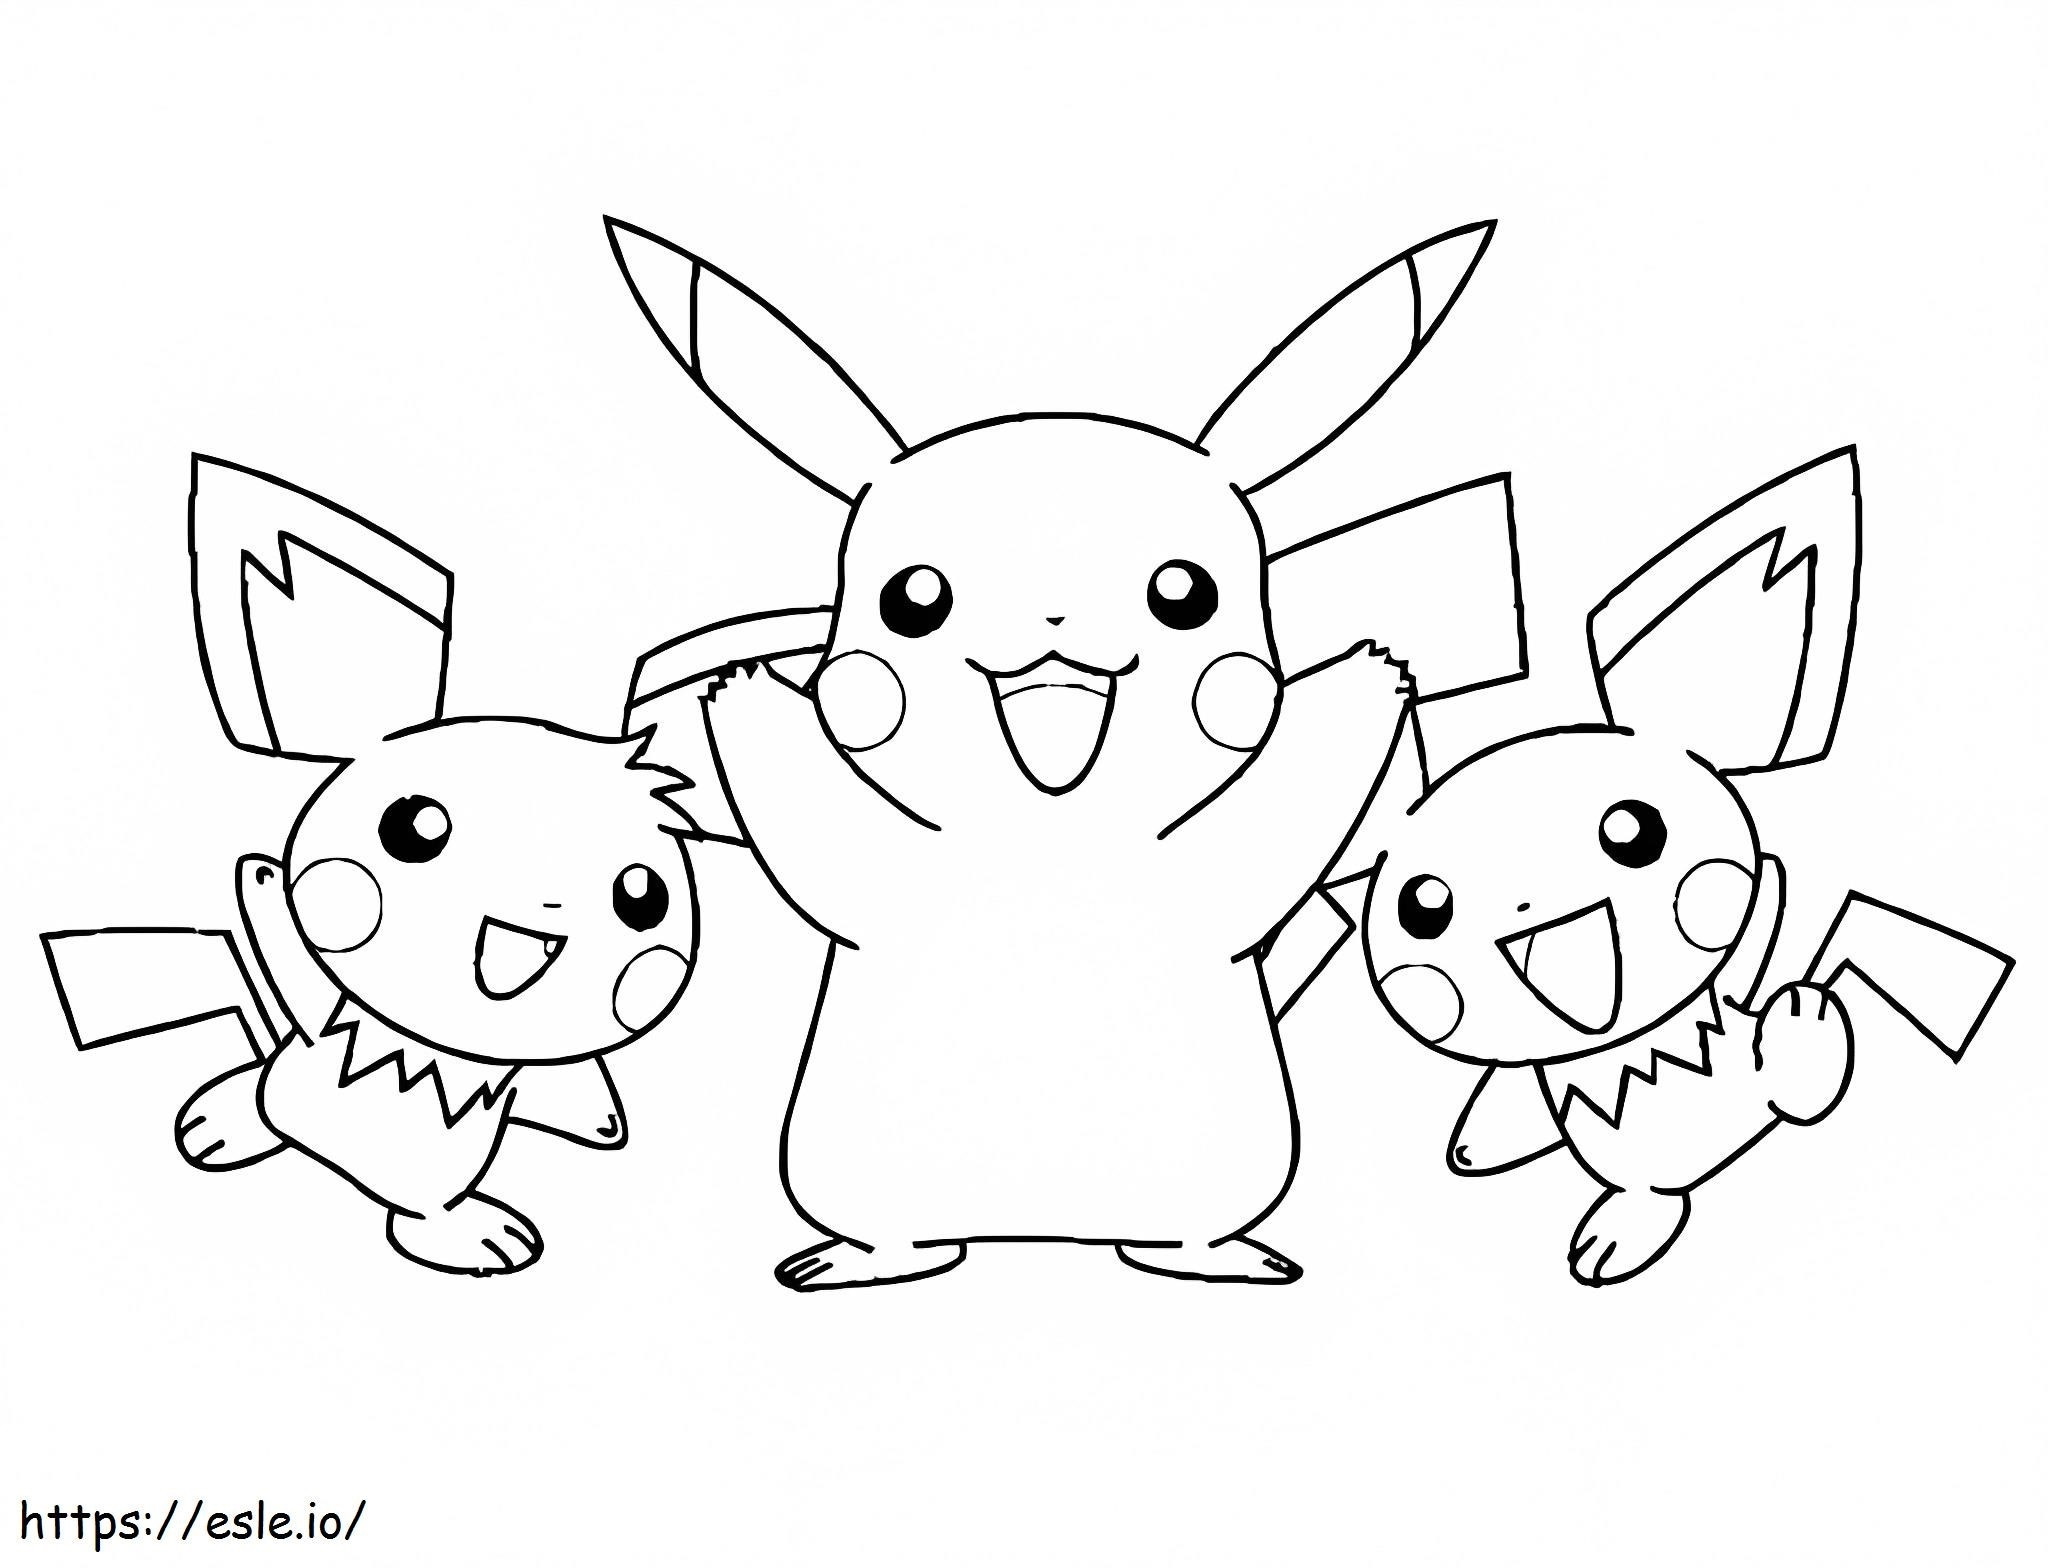 Zwei Pichu und Pikachu ausmalbilder